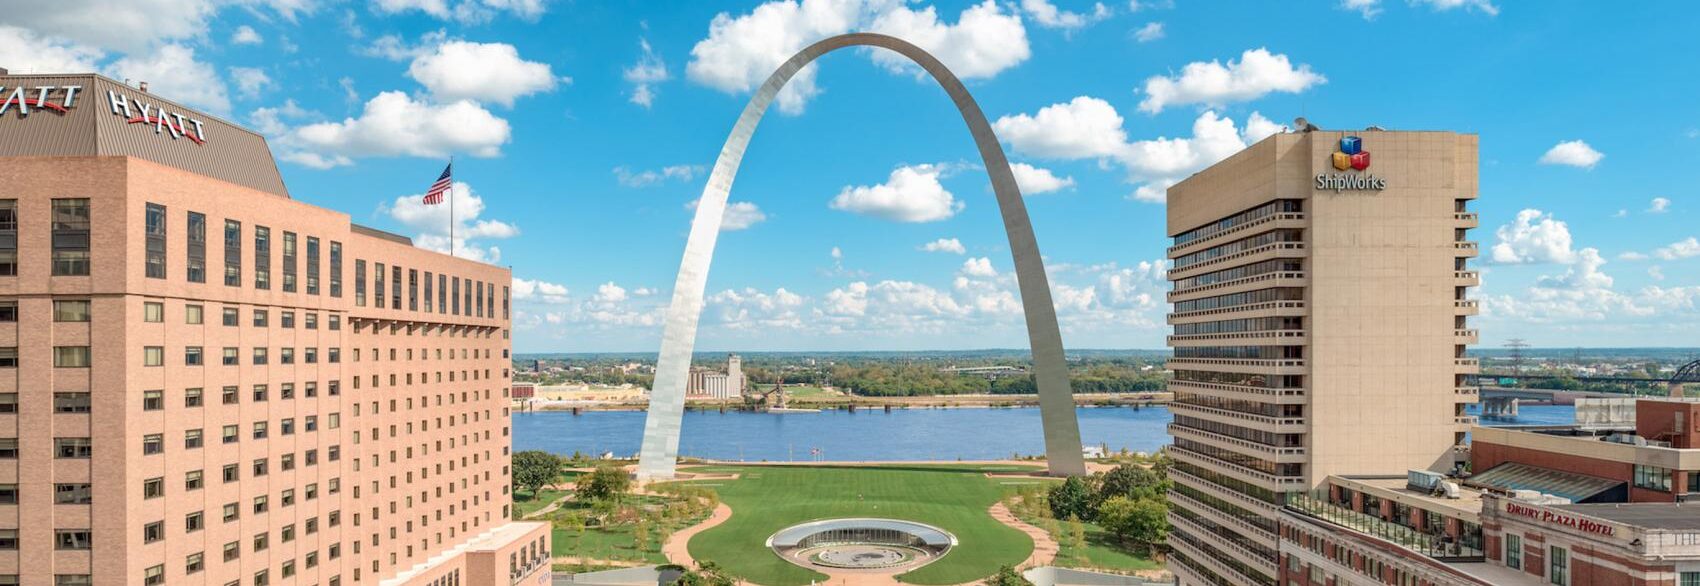 Missouri Gateway Arch